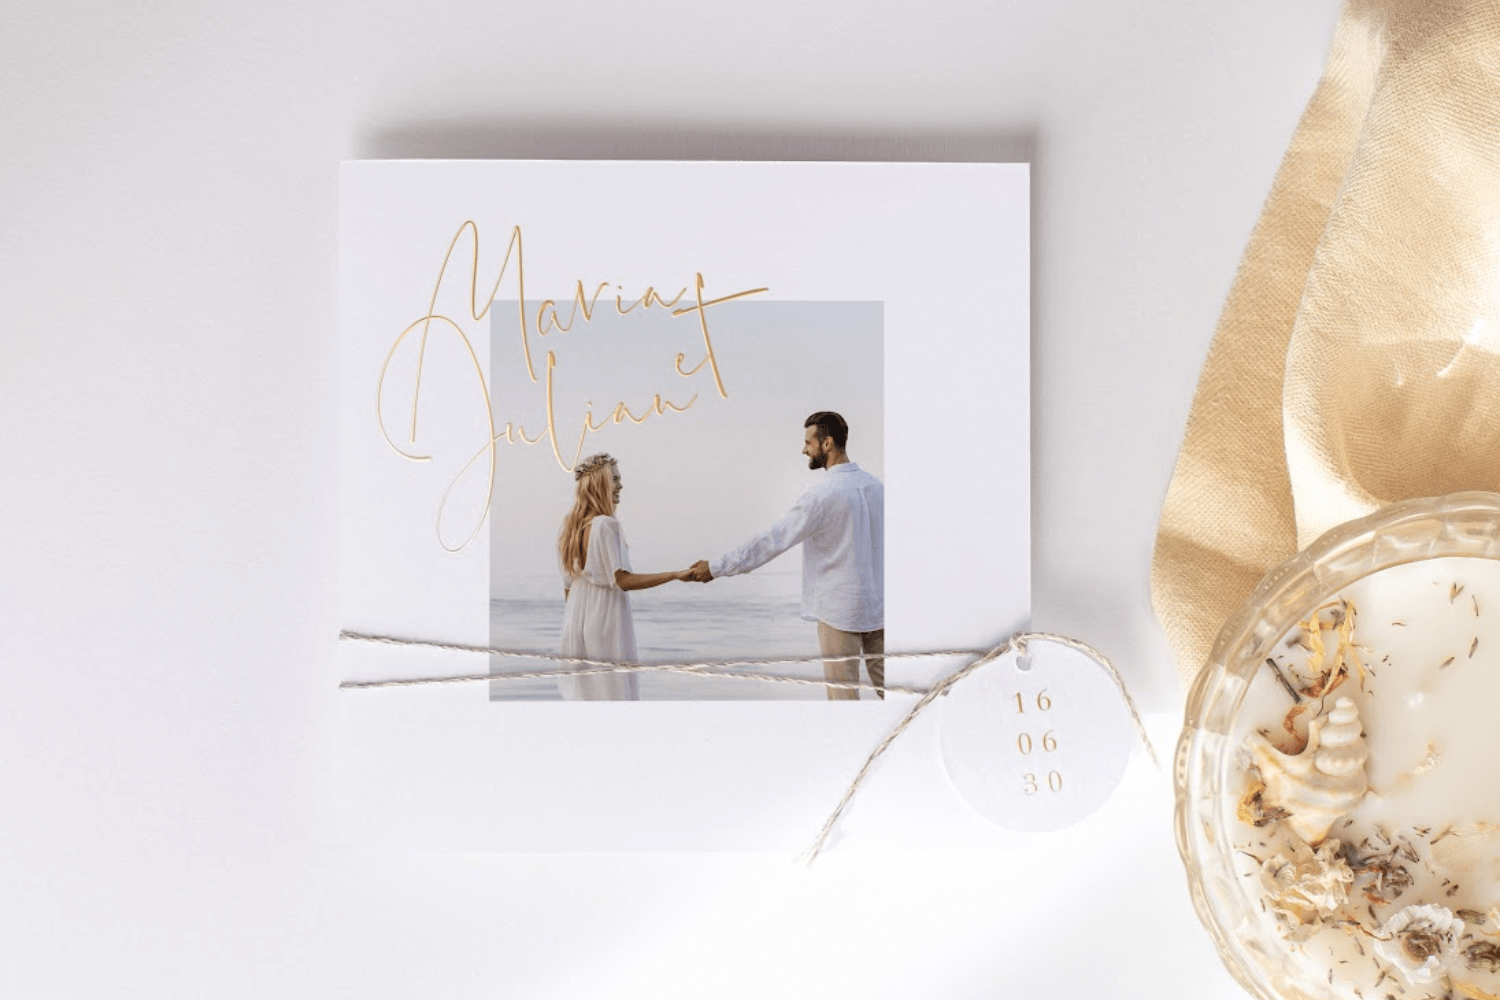 faire-part de mariage carré avec prénoms des mariés en finition dorée, photo du couple, agrémenté d’une étiquette personnalisée.